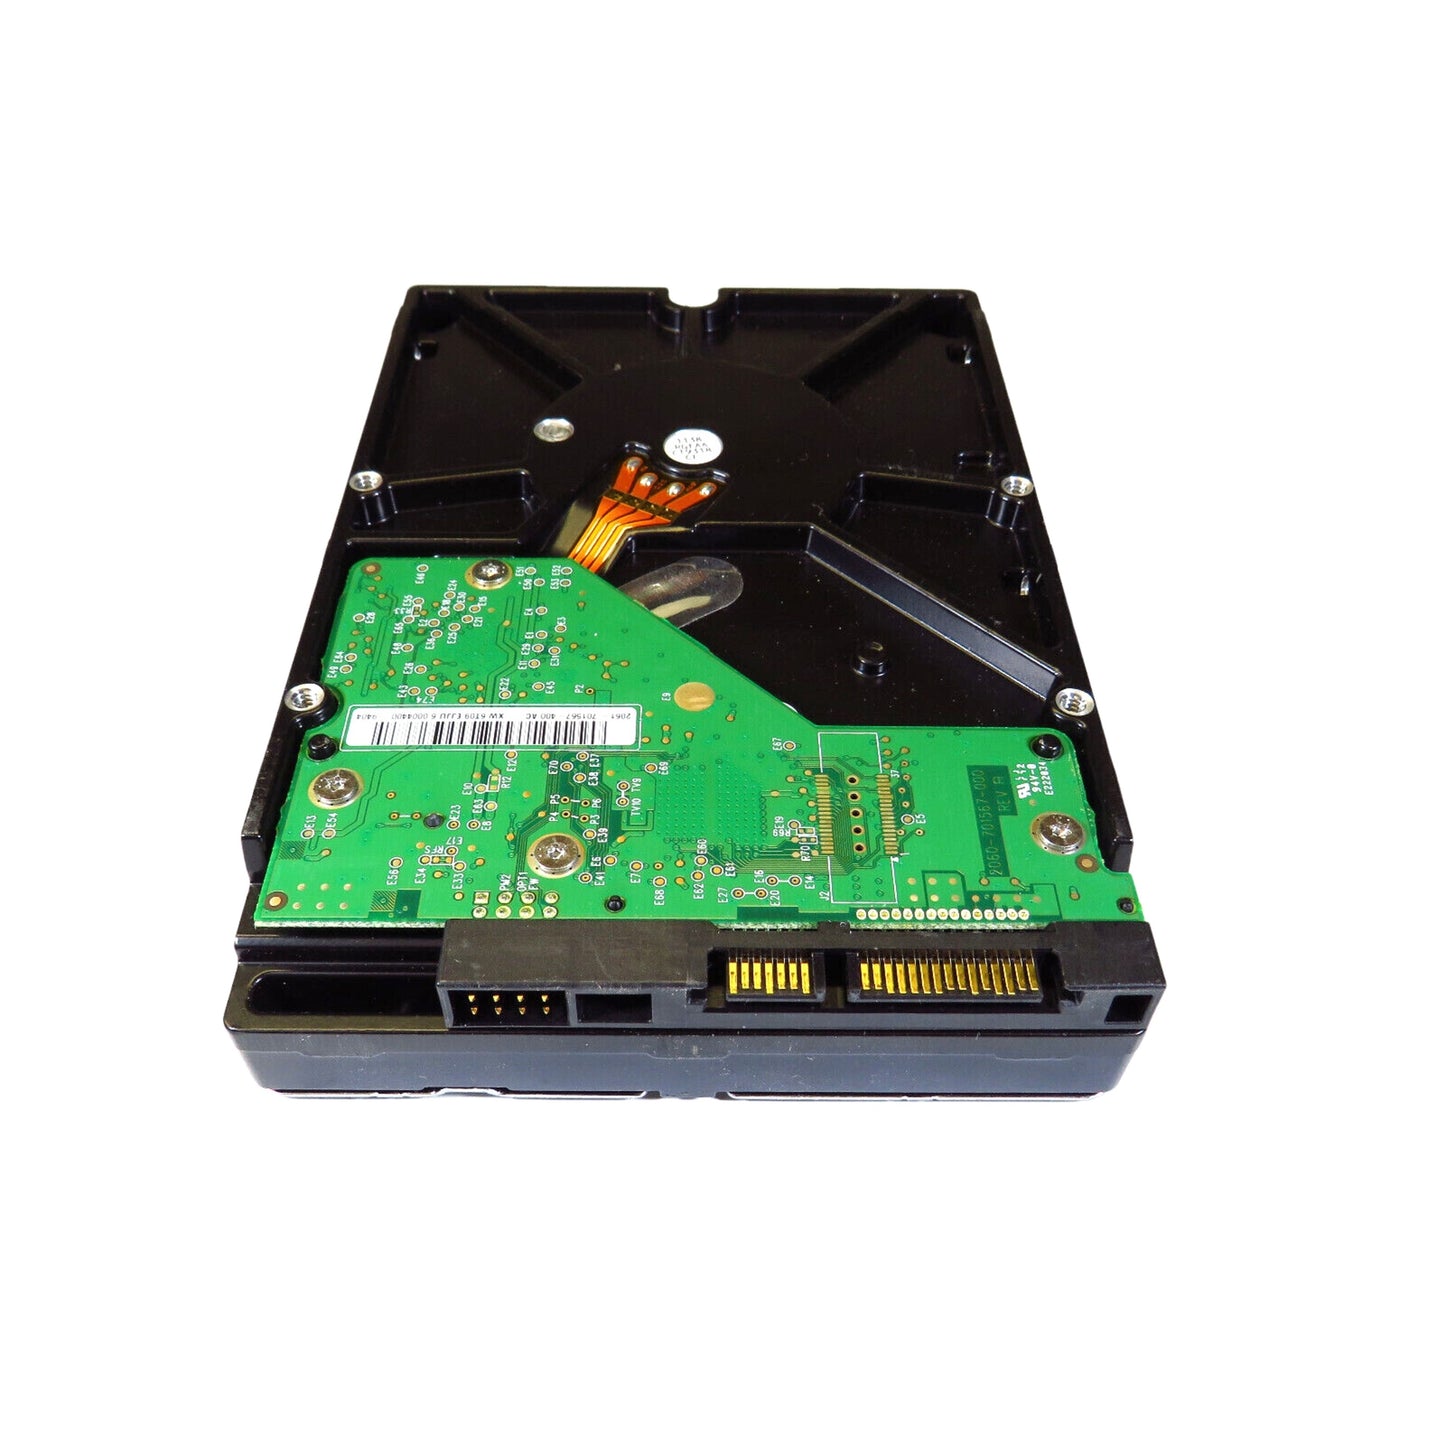 Dell J317F 3.5" 1TB 7200RPM SATA II Hard Disk Drive (HDD), Silver (Refurbished)